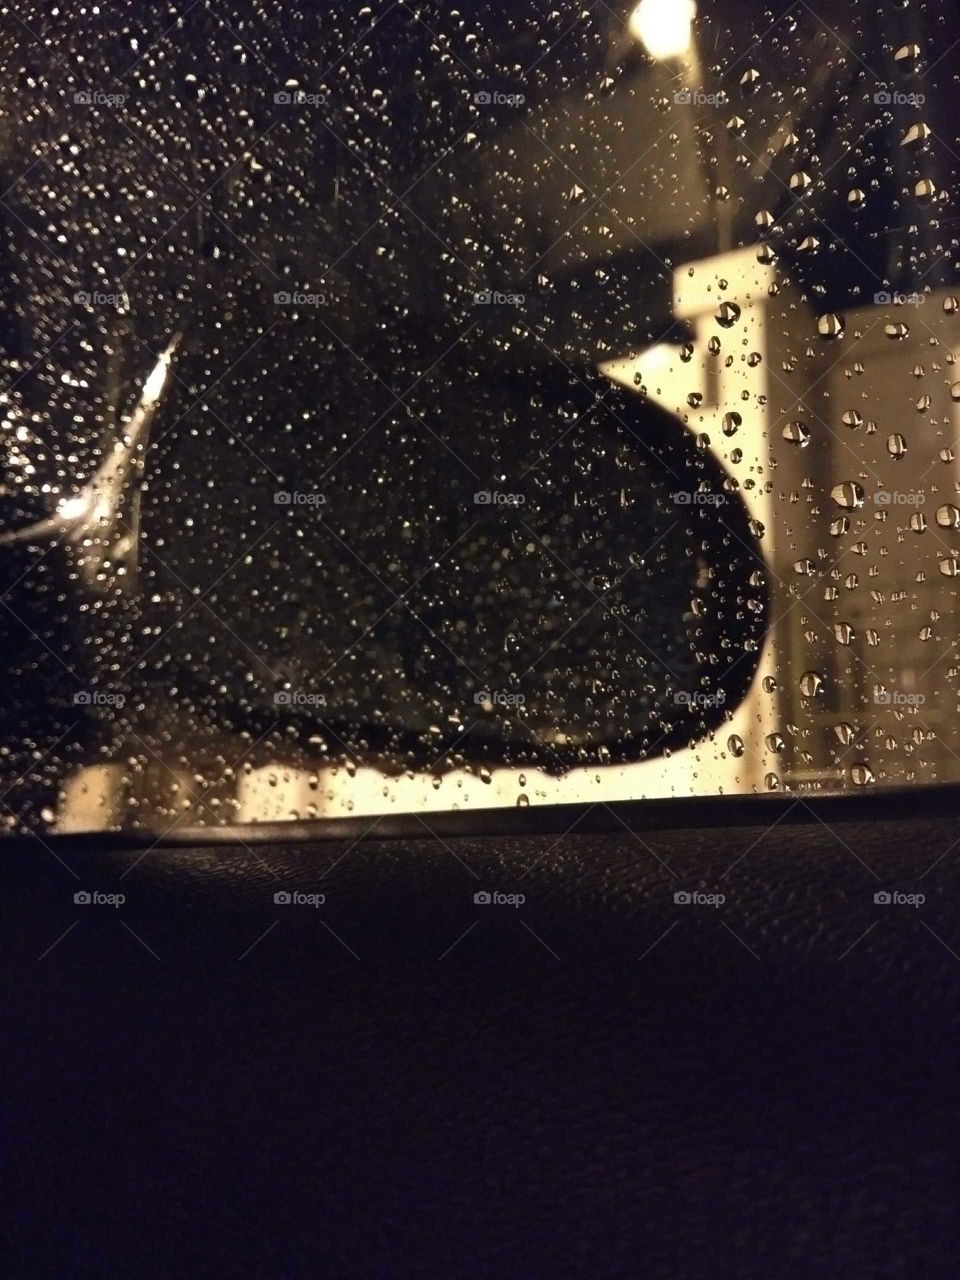 Noche lluviosa, espejo de auto con gotas